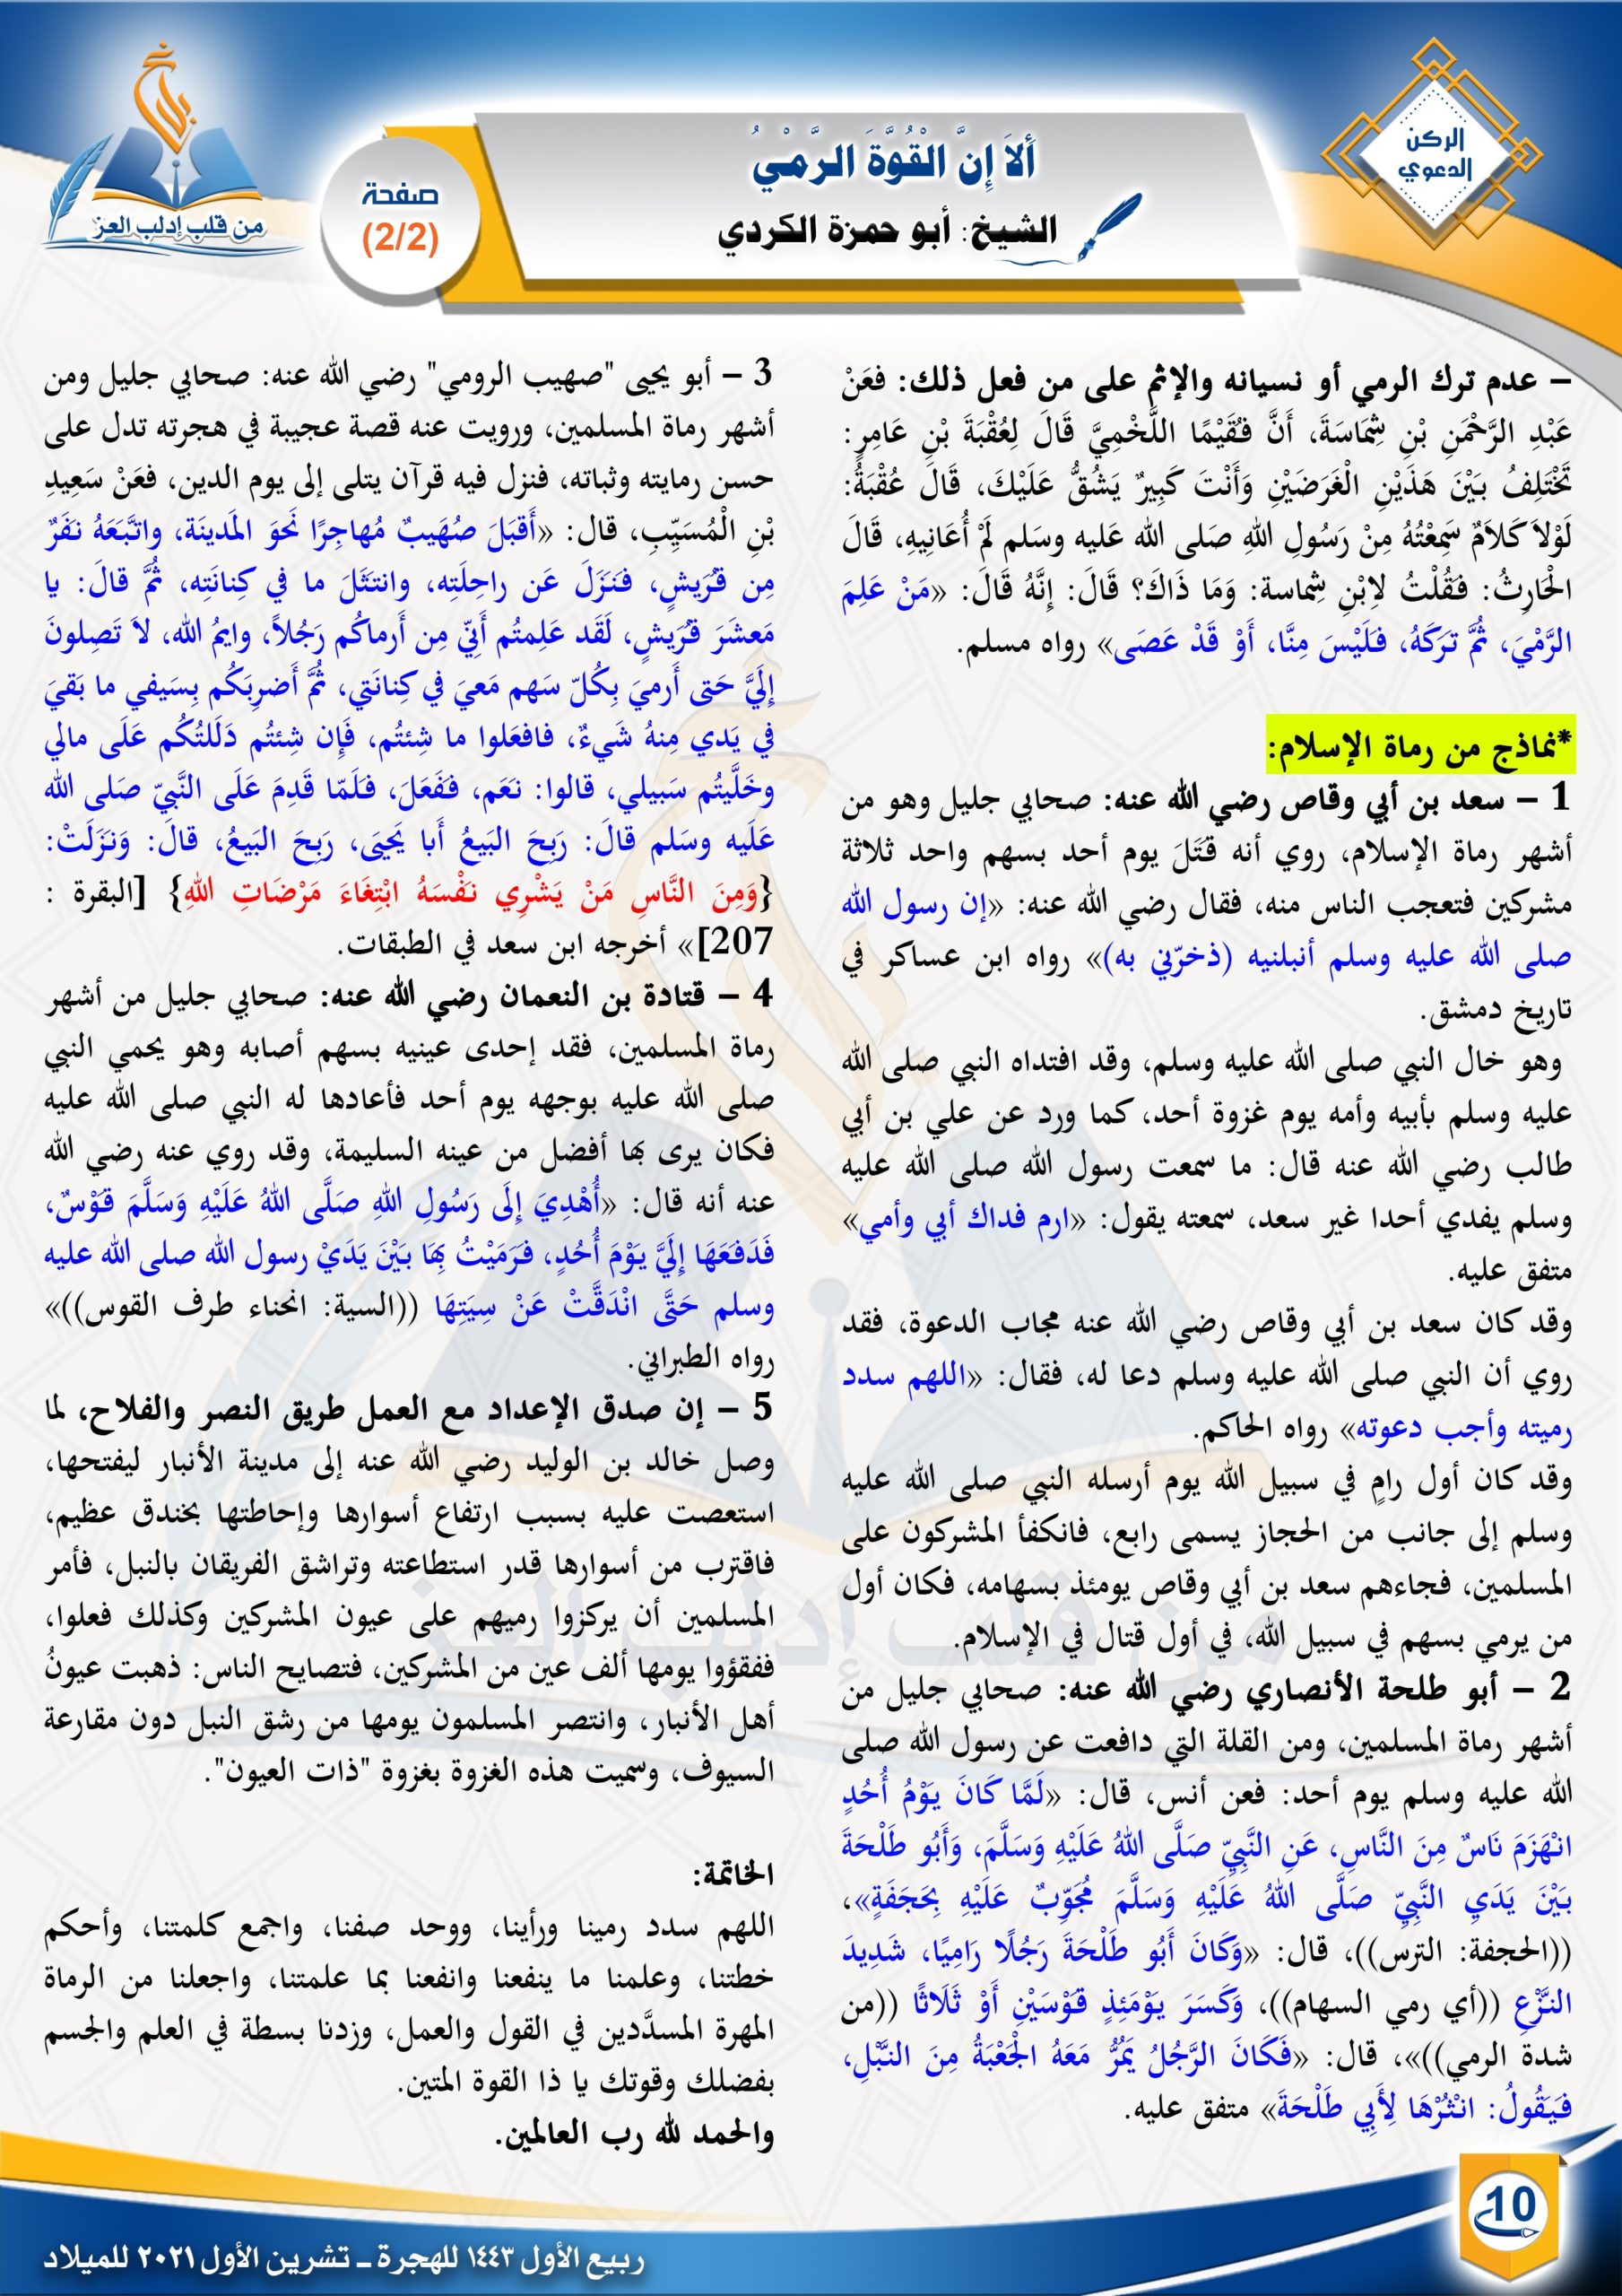  ألا إن القوة الرمي - الركن الدعوي - مجلة بلاغ العدد ٢٩ ربيع الأول ١٤٤٣ هـ - الشيخ أبو حمزة الكردي